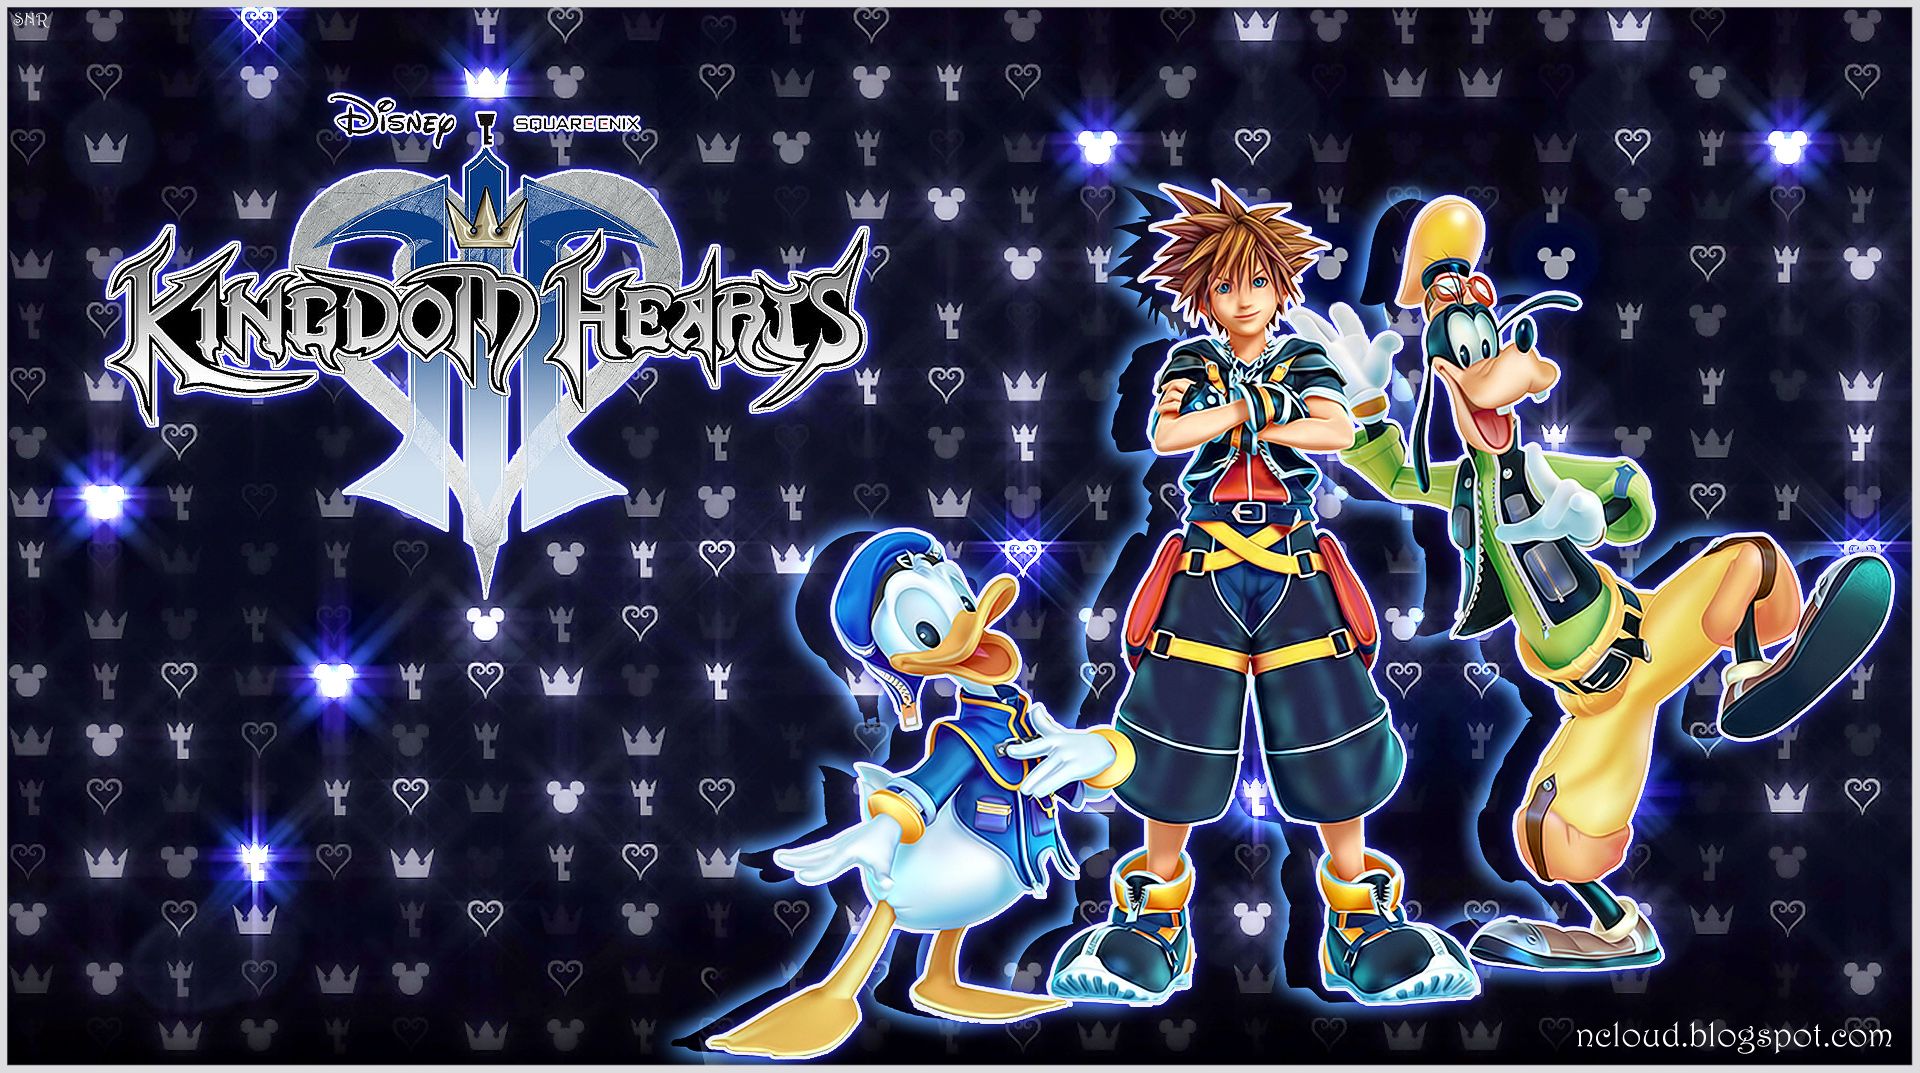 Kingdom Hearts 3 Wallpaper. Magic